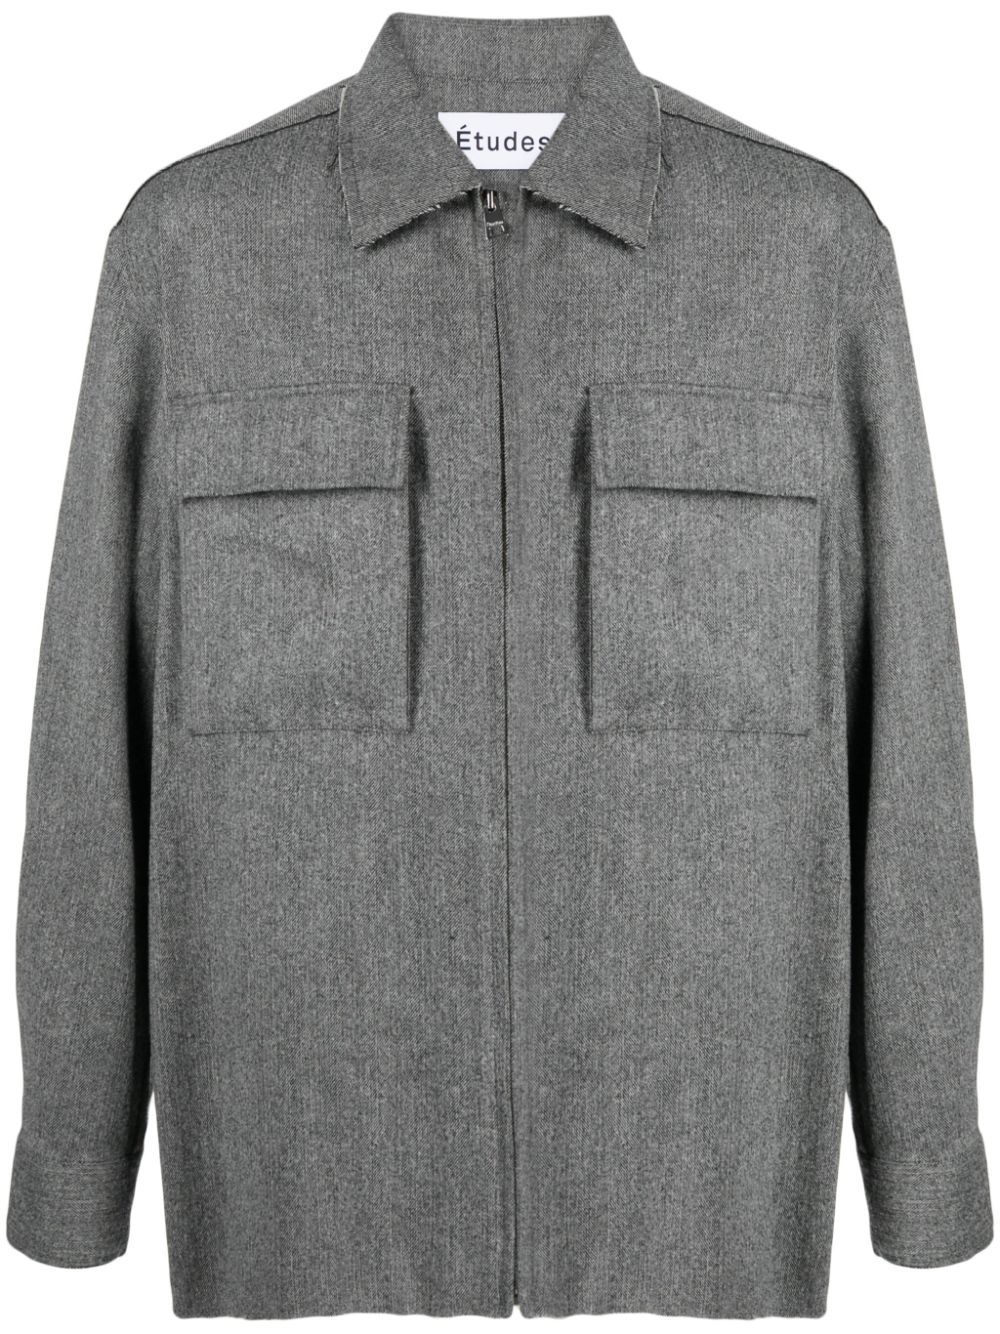 Communaute flannel shirt jacket - 1